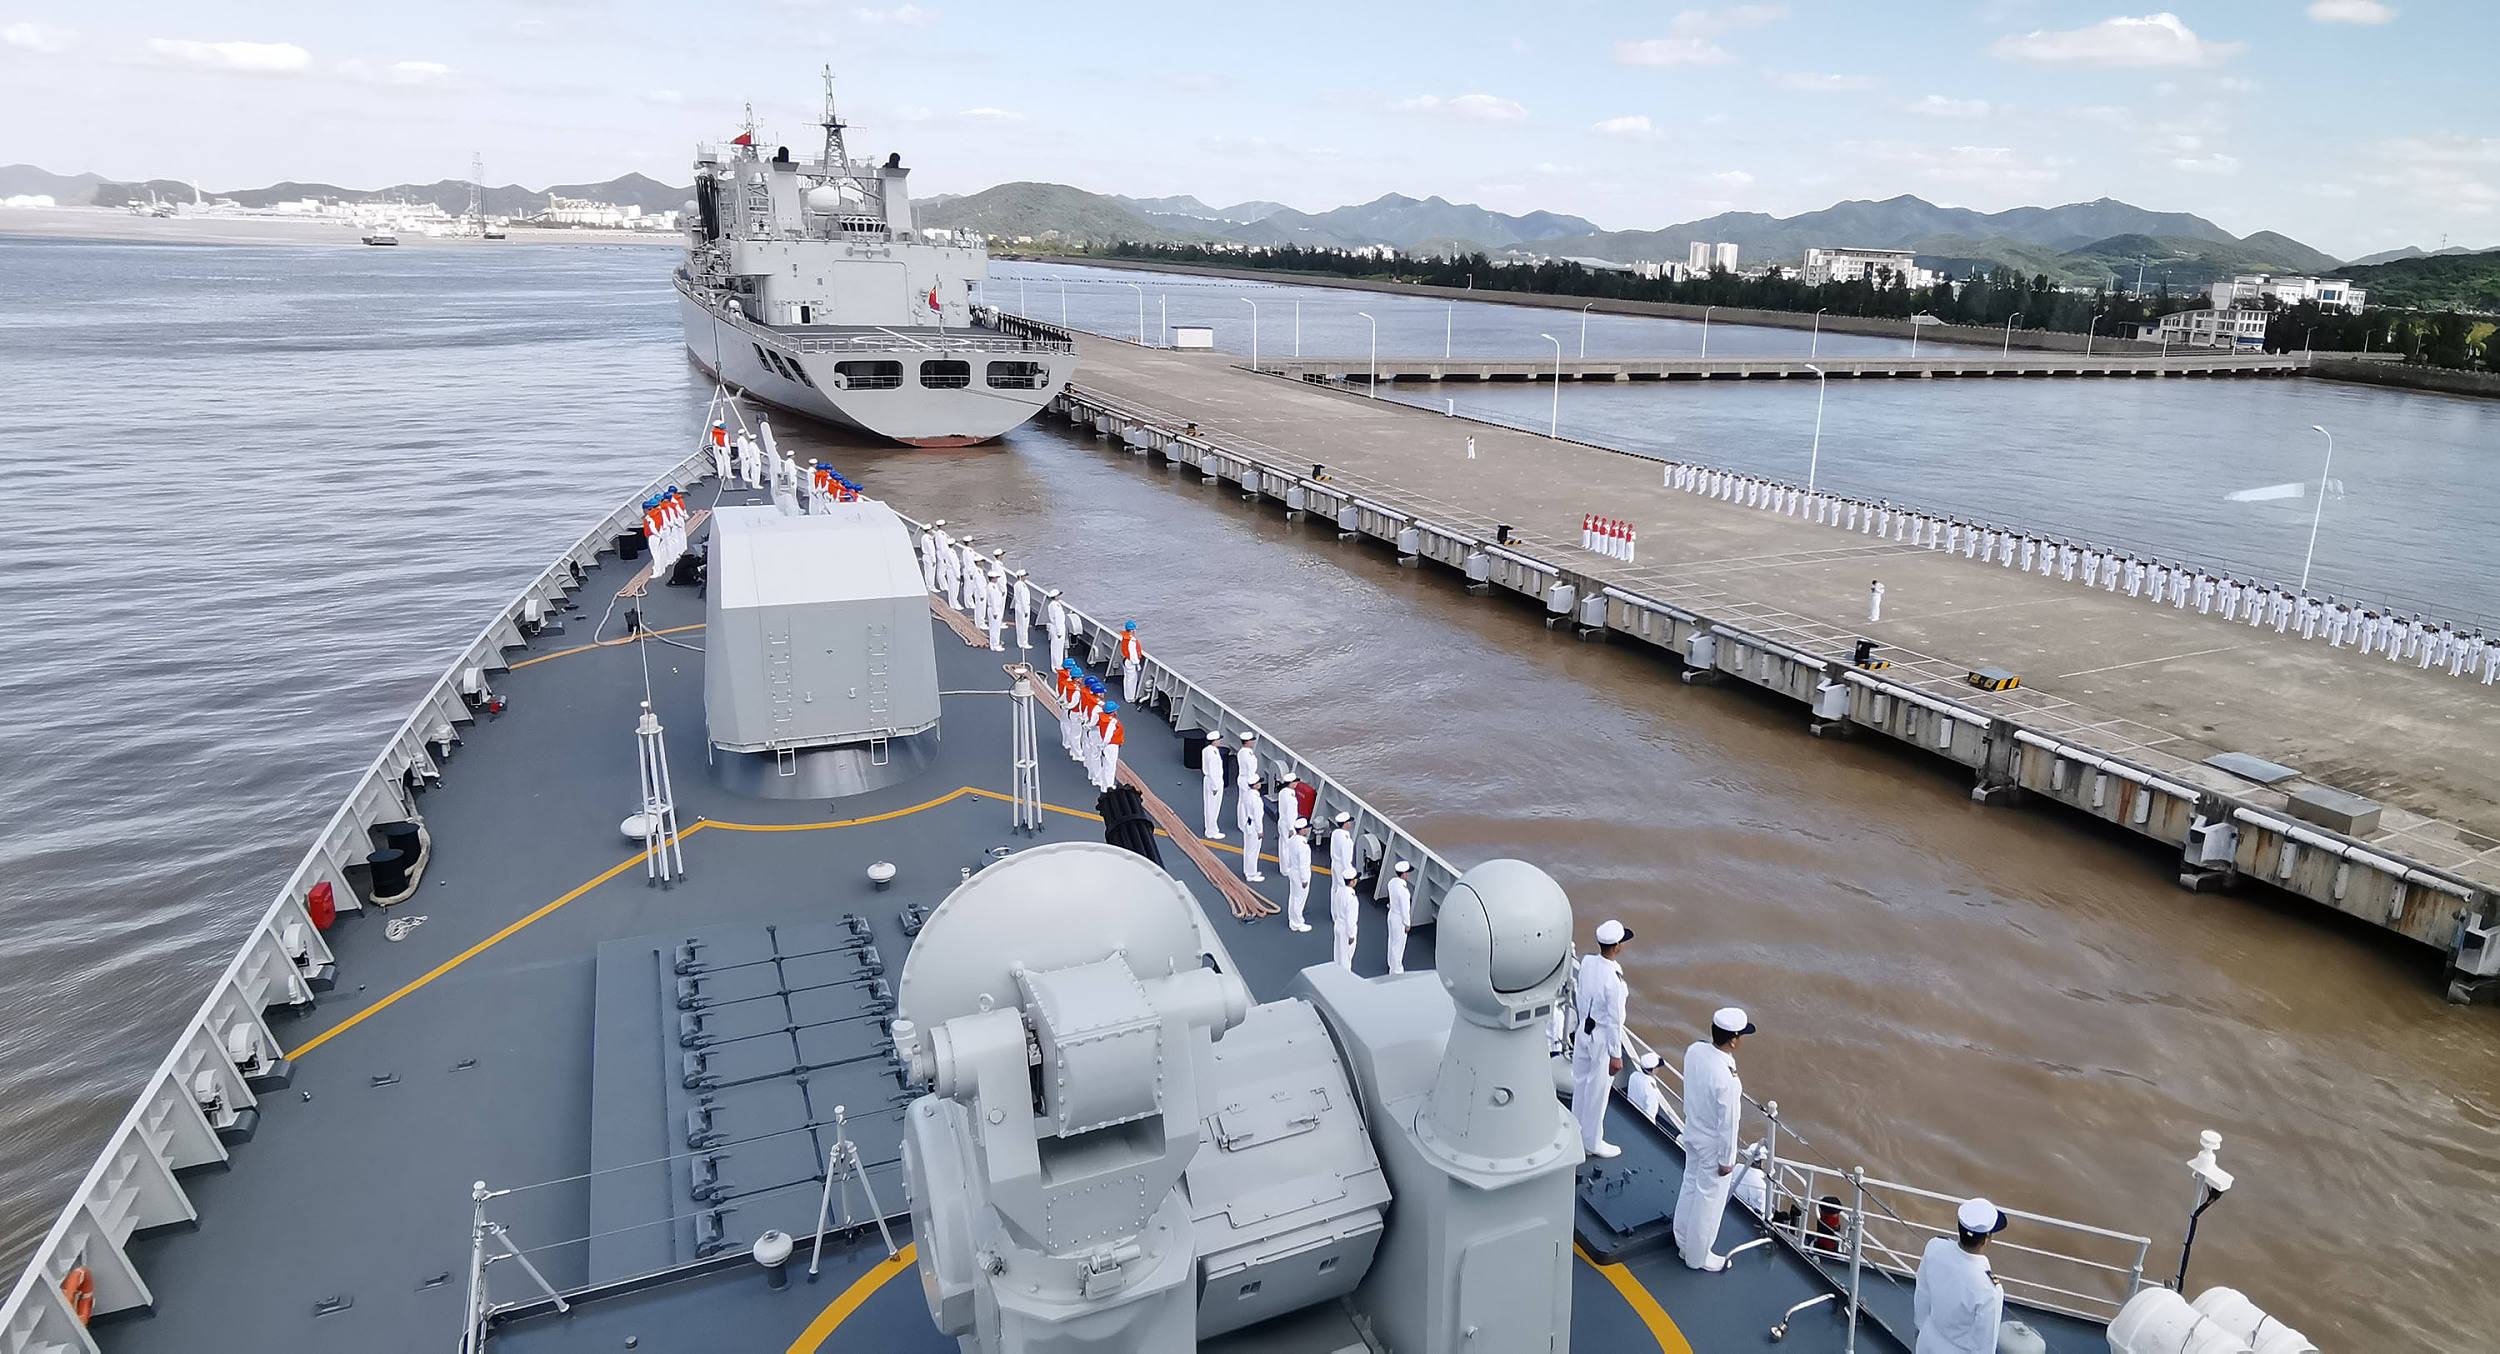 的海军第35批护航编队,于2020年10月14日上午顺利返回浙江舟山某军港